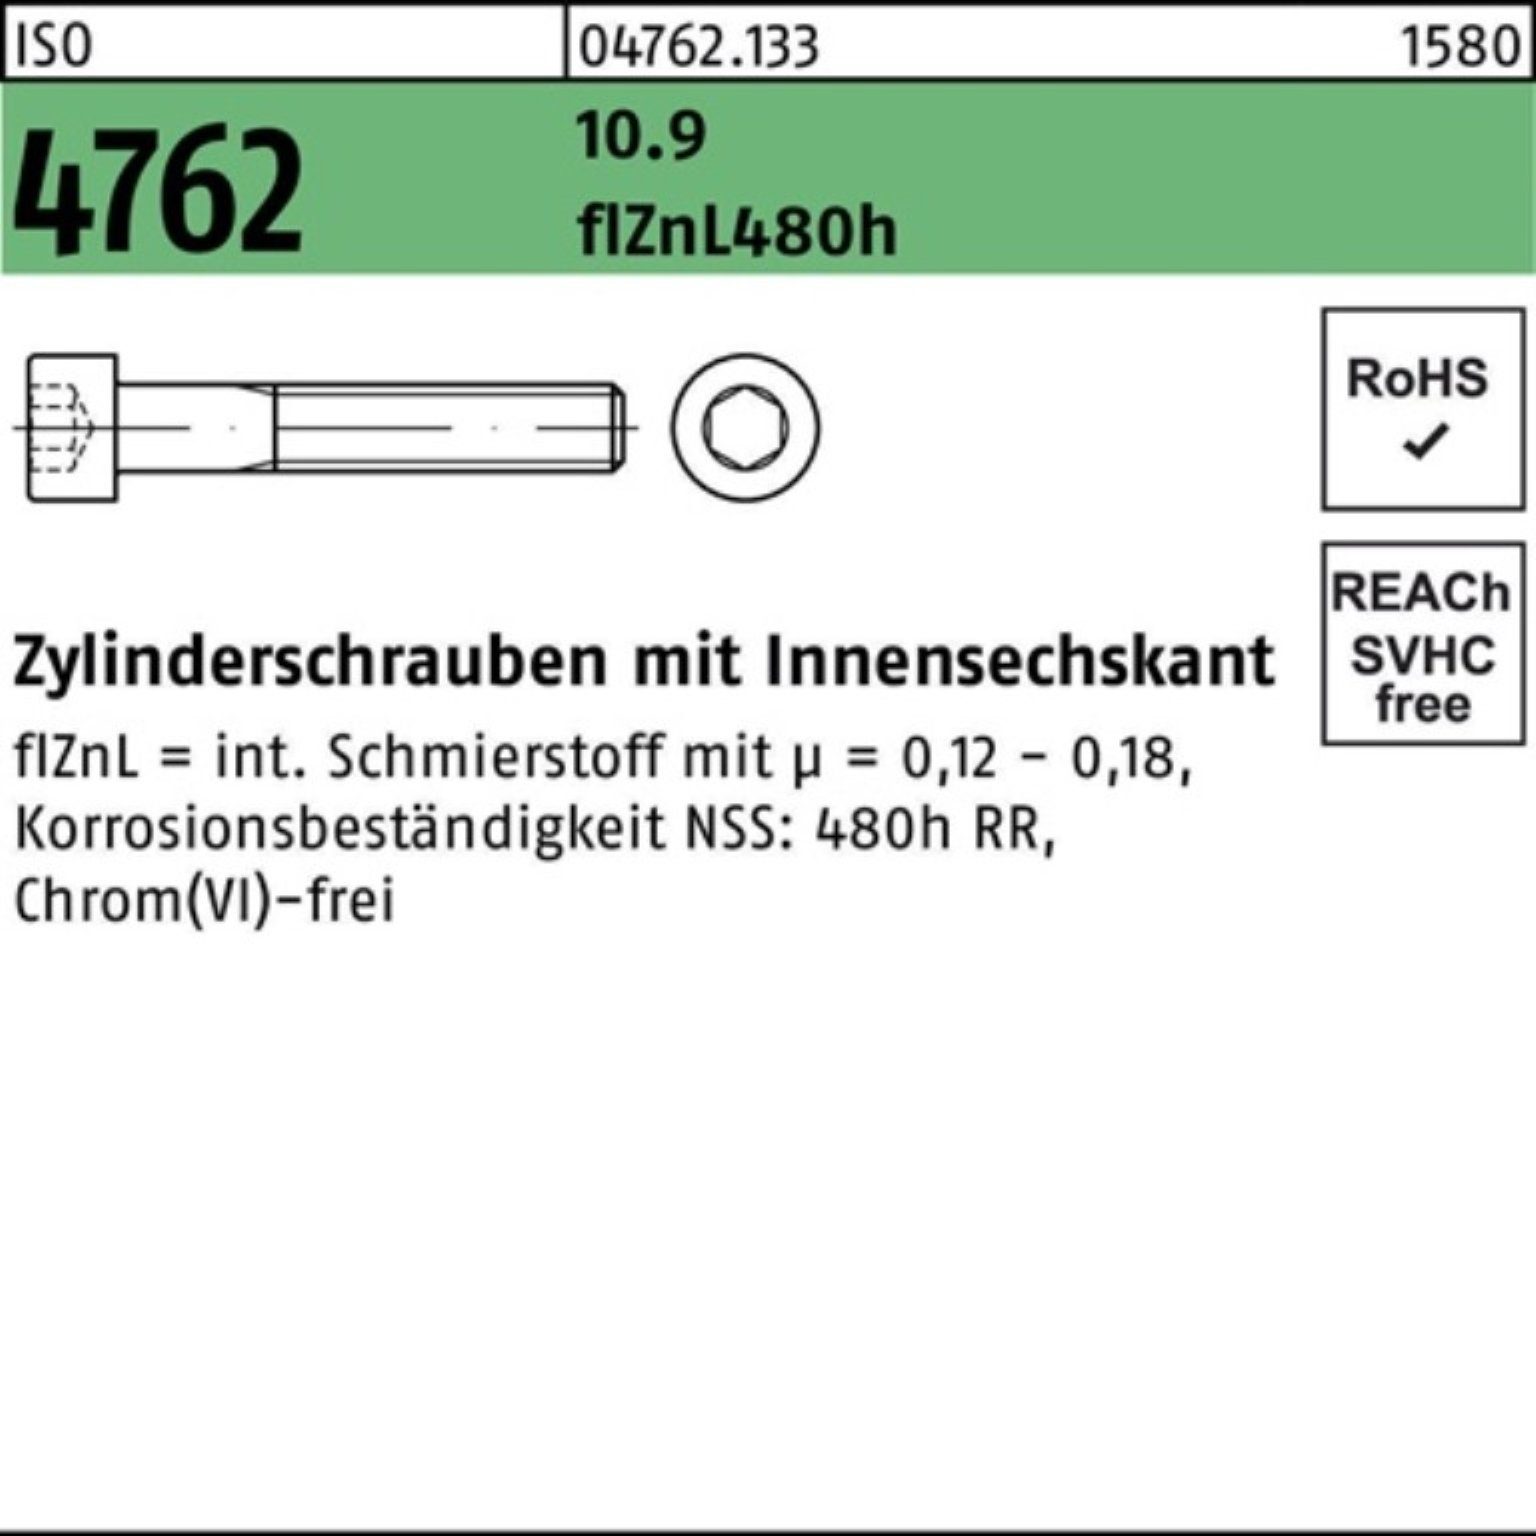 Pack 4762 Zylinderschraube Reyher zinklamelle M10x45 ISO Innen-6kt 10.9 Zylinderschraube 100er